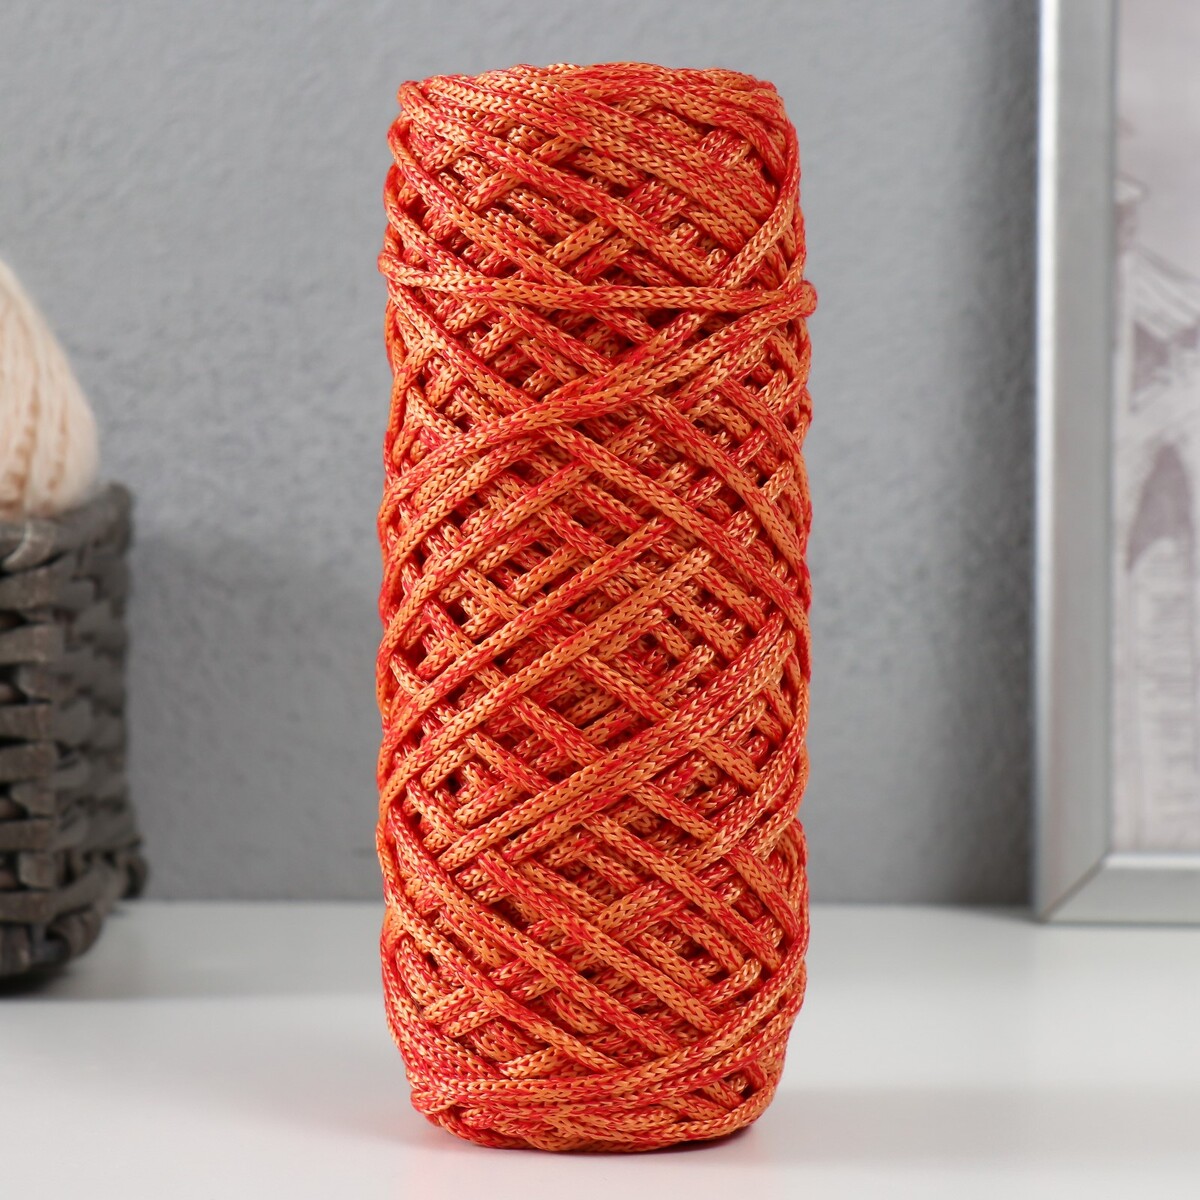 Шнур для вязания 35% хлопок,65% полипропилен 3 мм 85м/160±10 гр (красный/оранжевый)